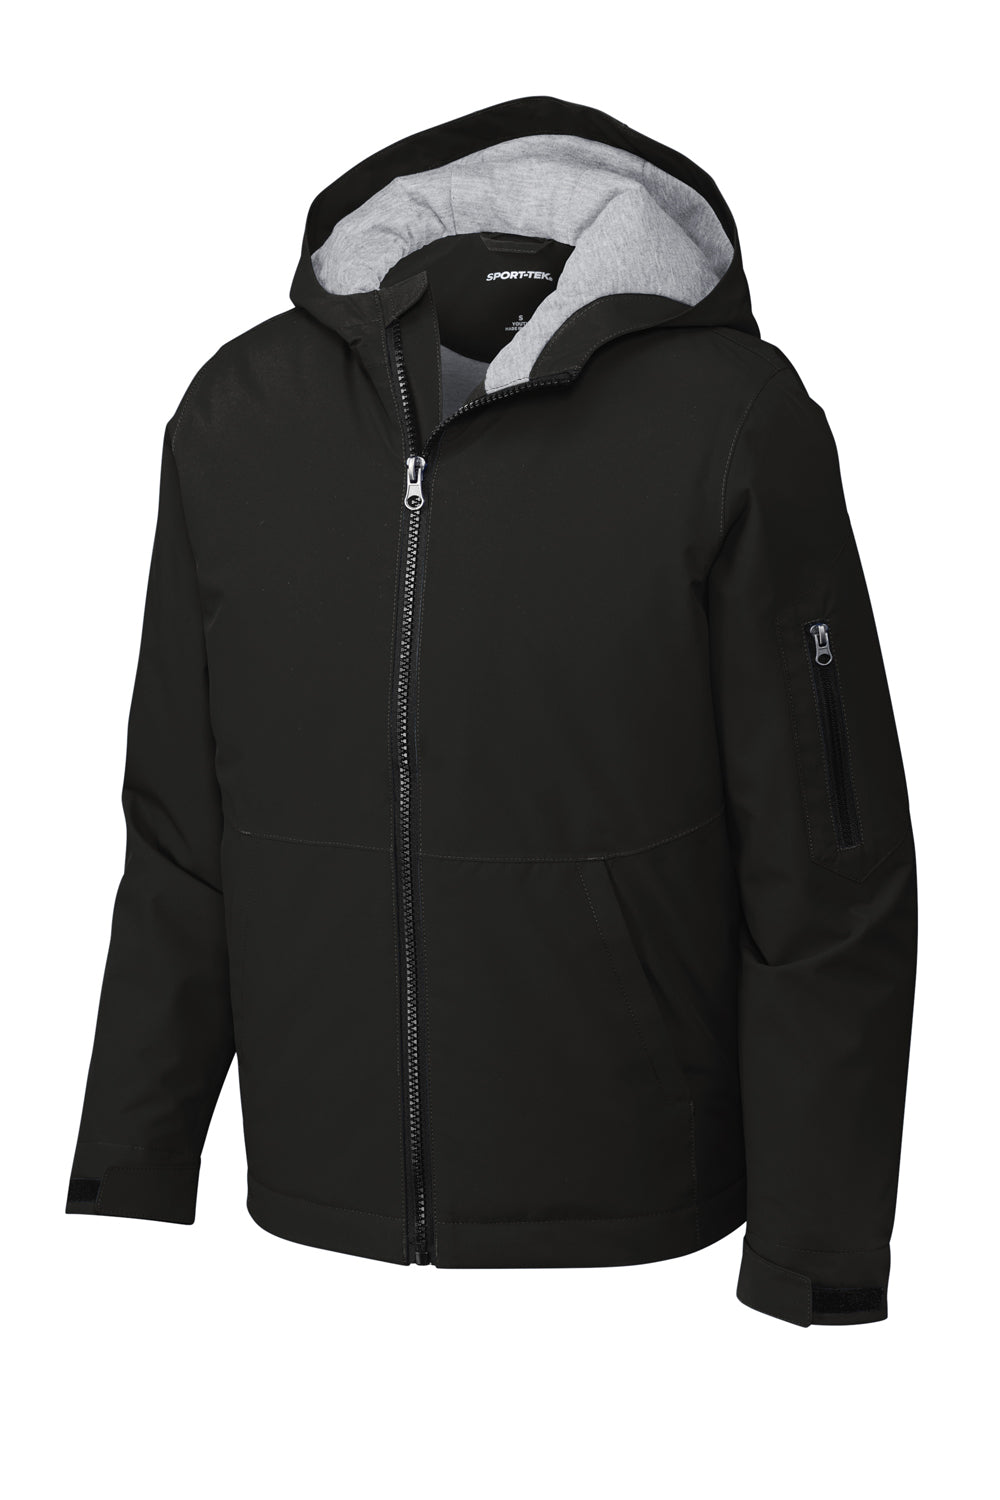 Sport-Tek YST56 Waterproof Insulated Full Zip Hooded Jacket Black Flat Front